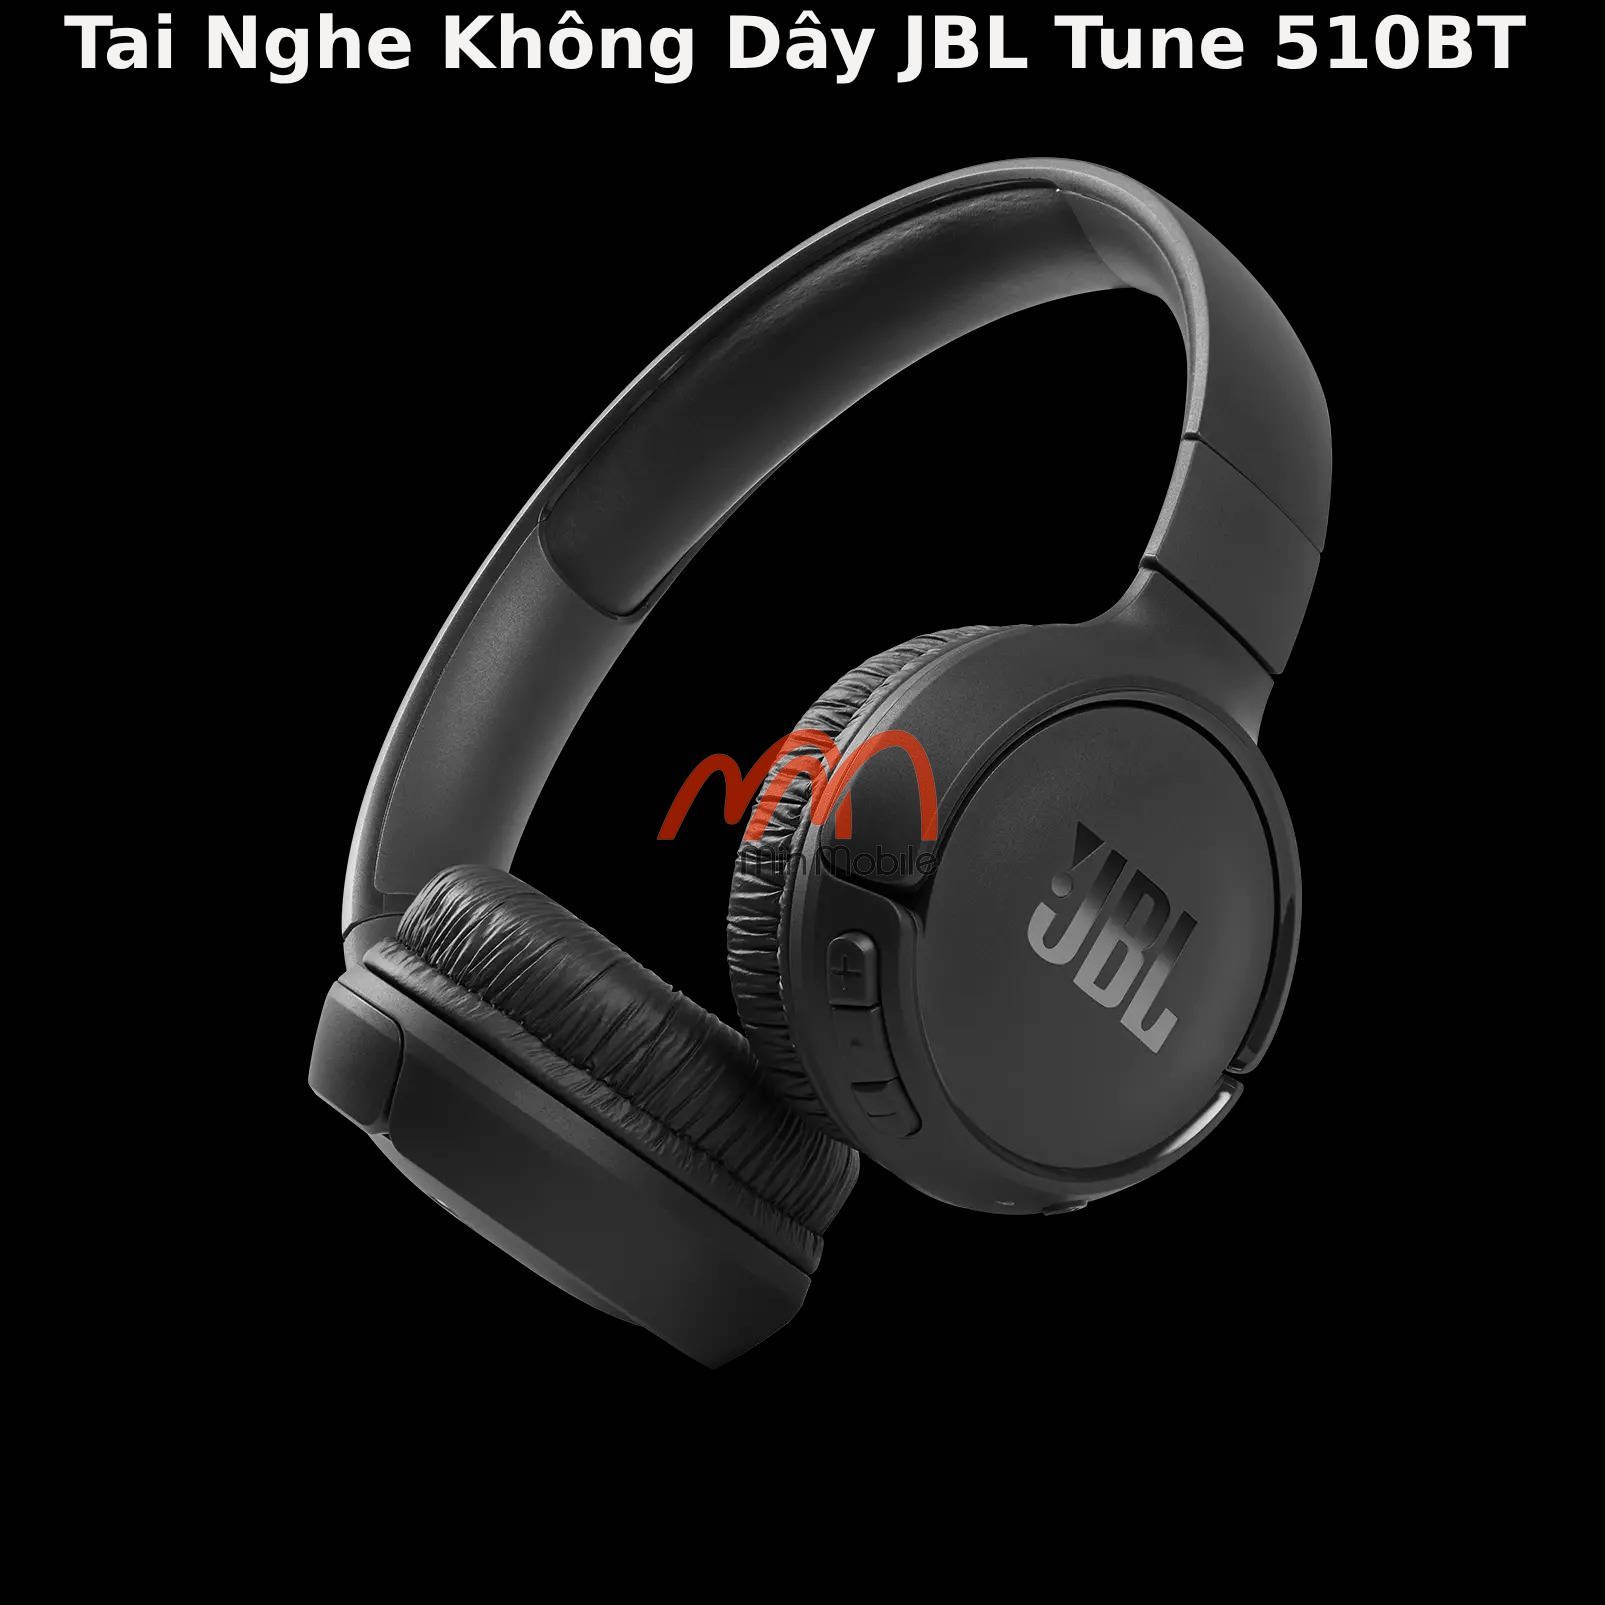 Tai Nghe Không Dây JBL Tune 510BT